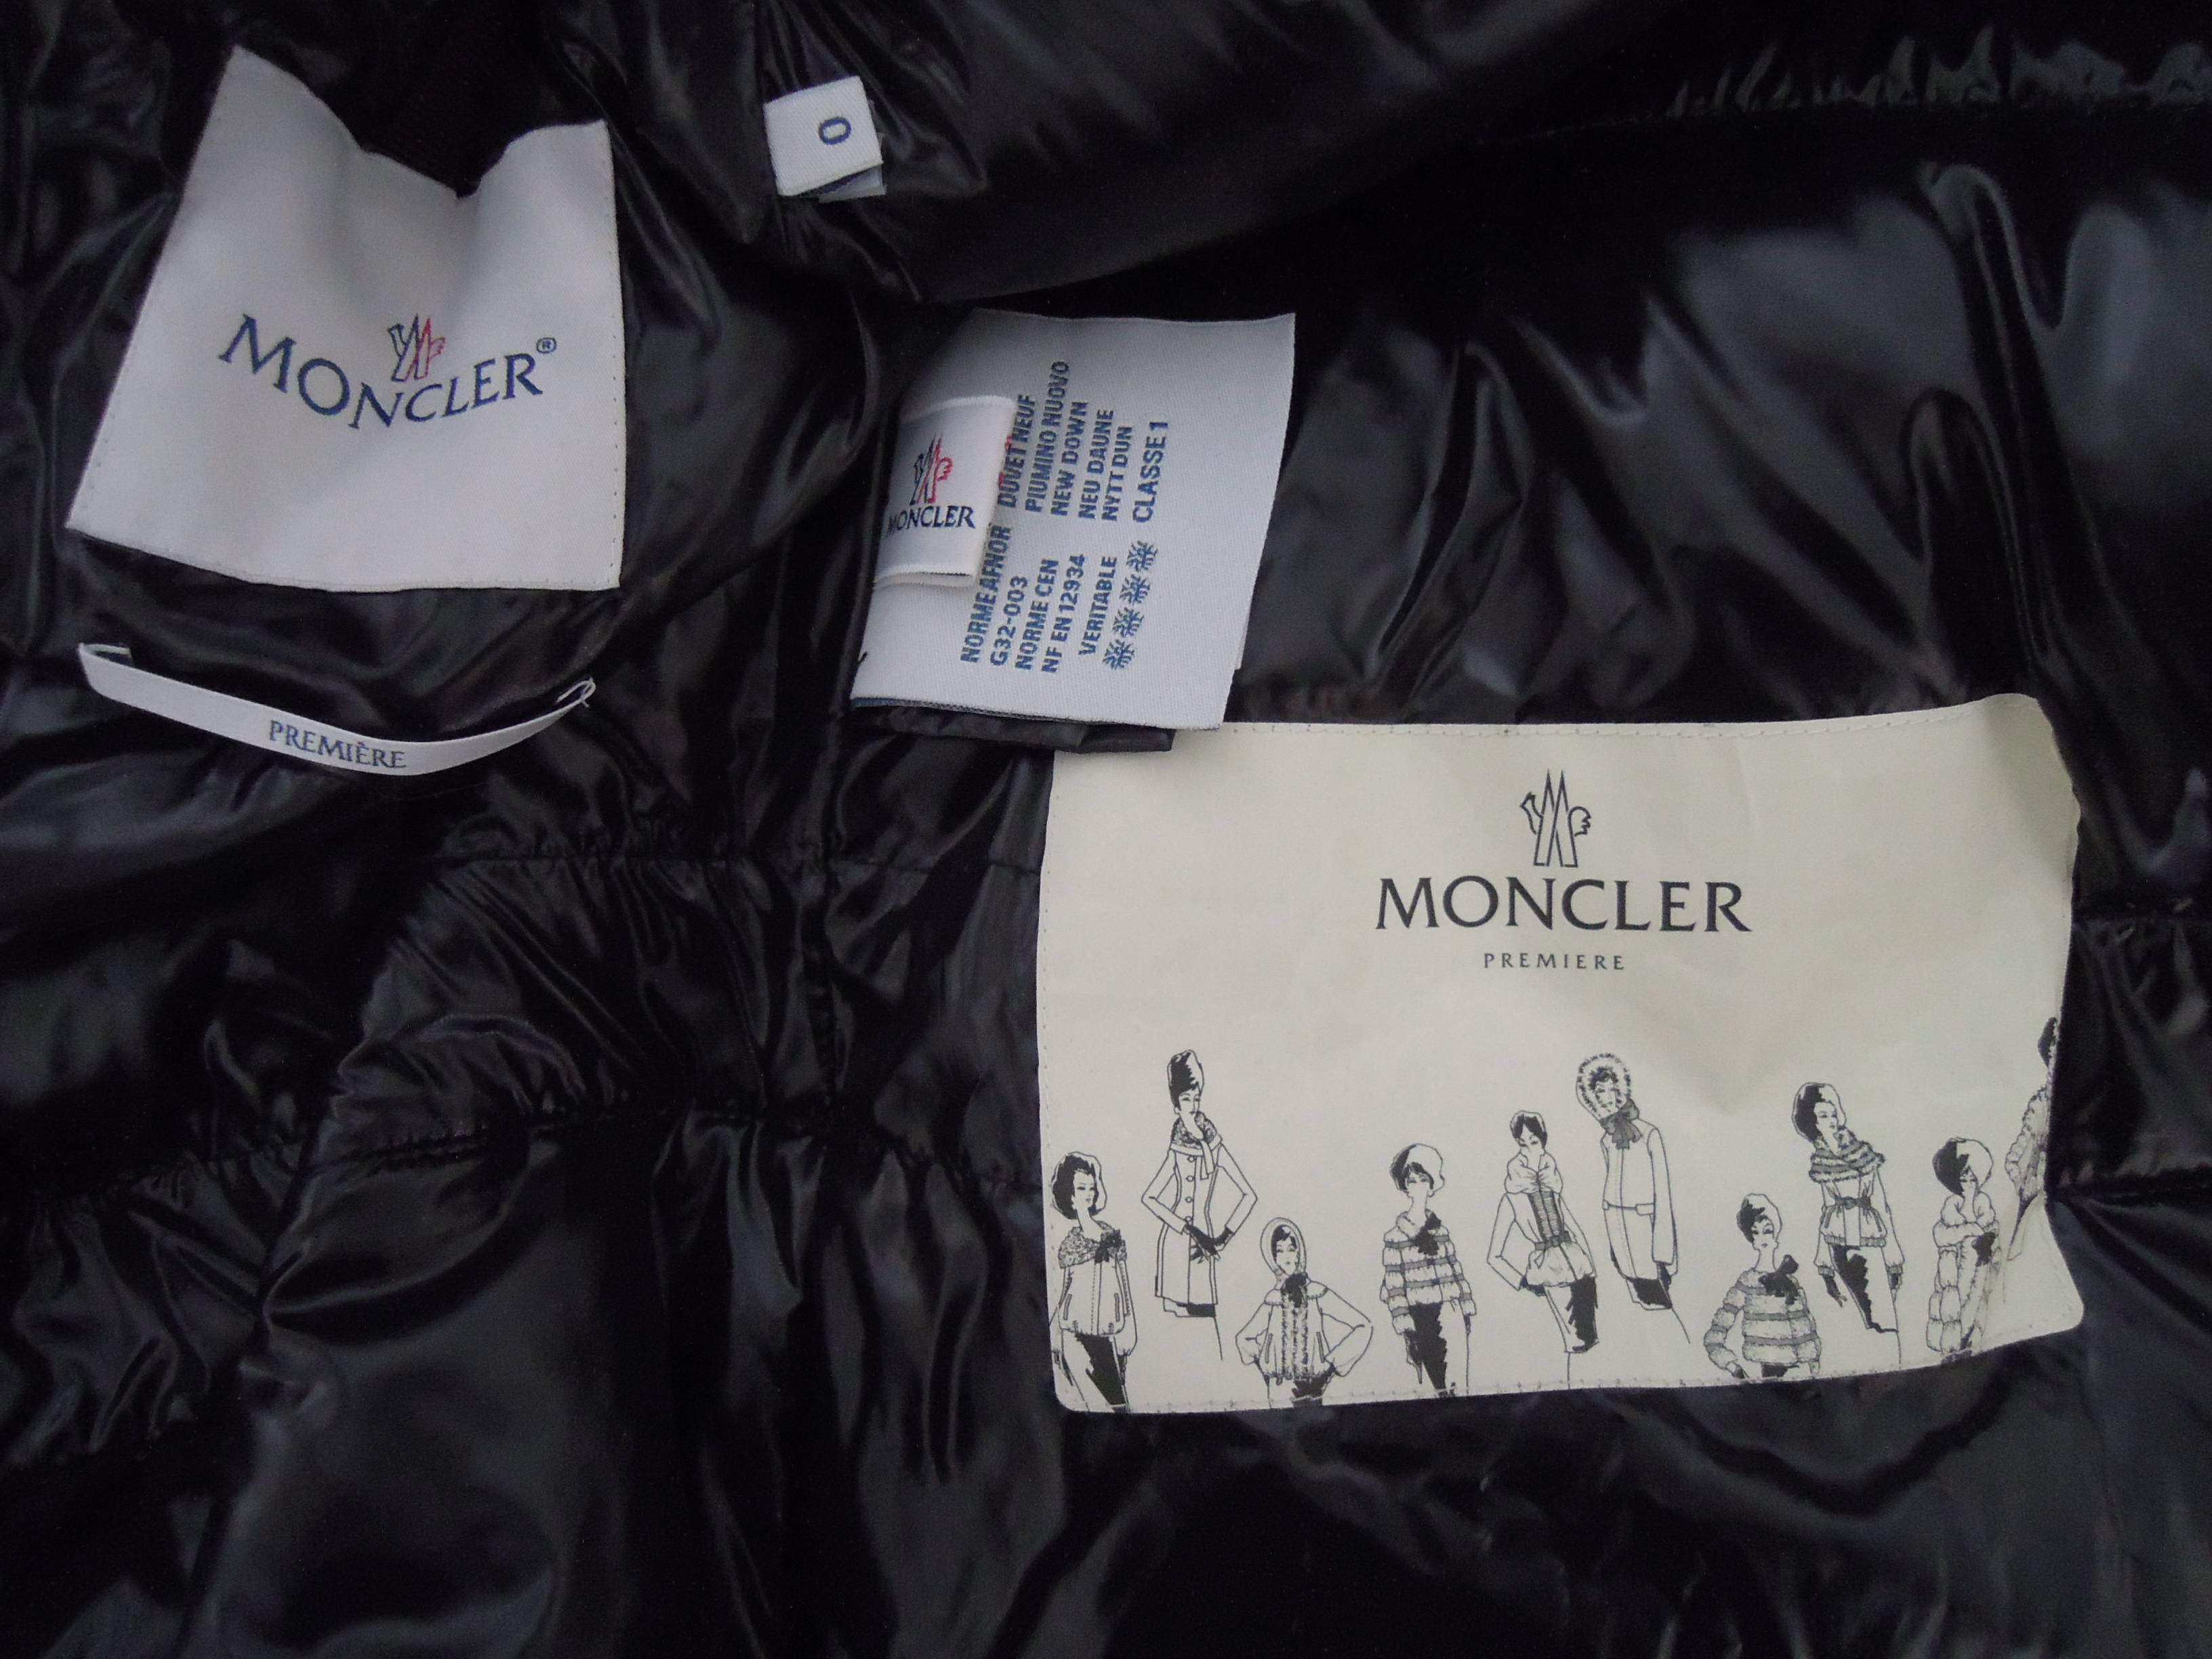 moncler premiere collection